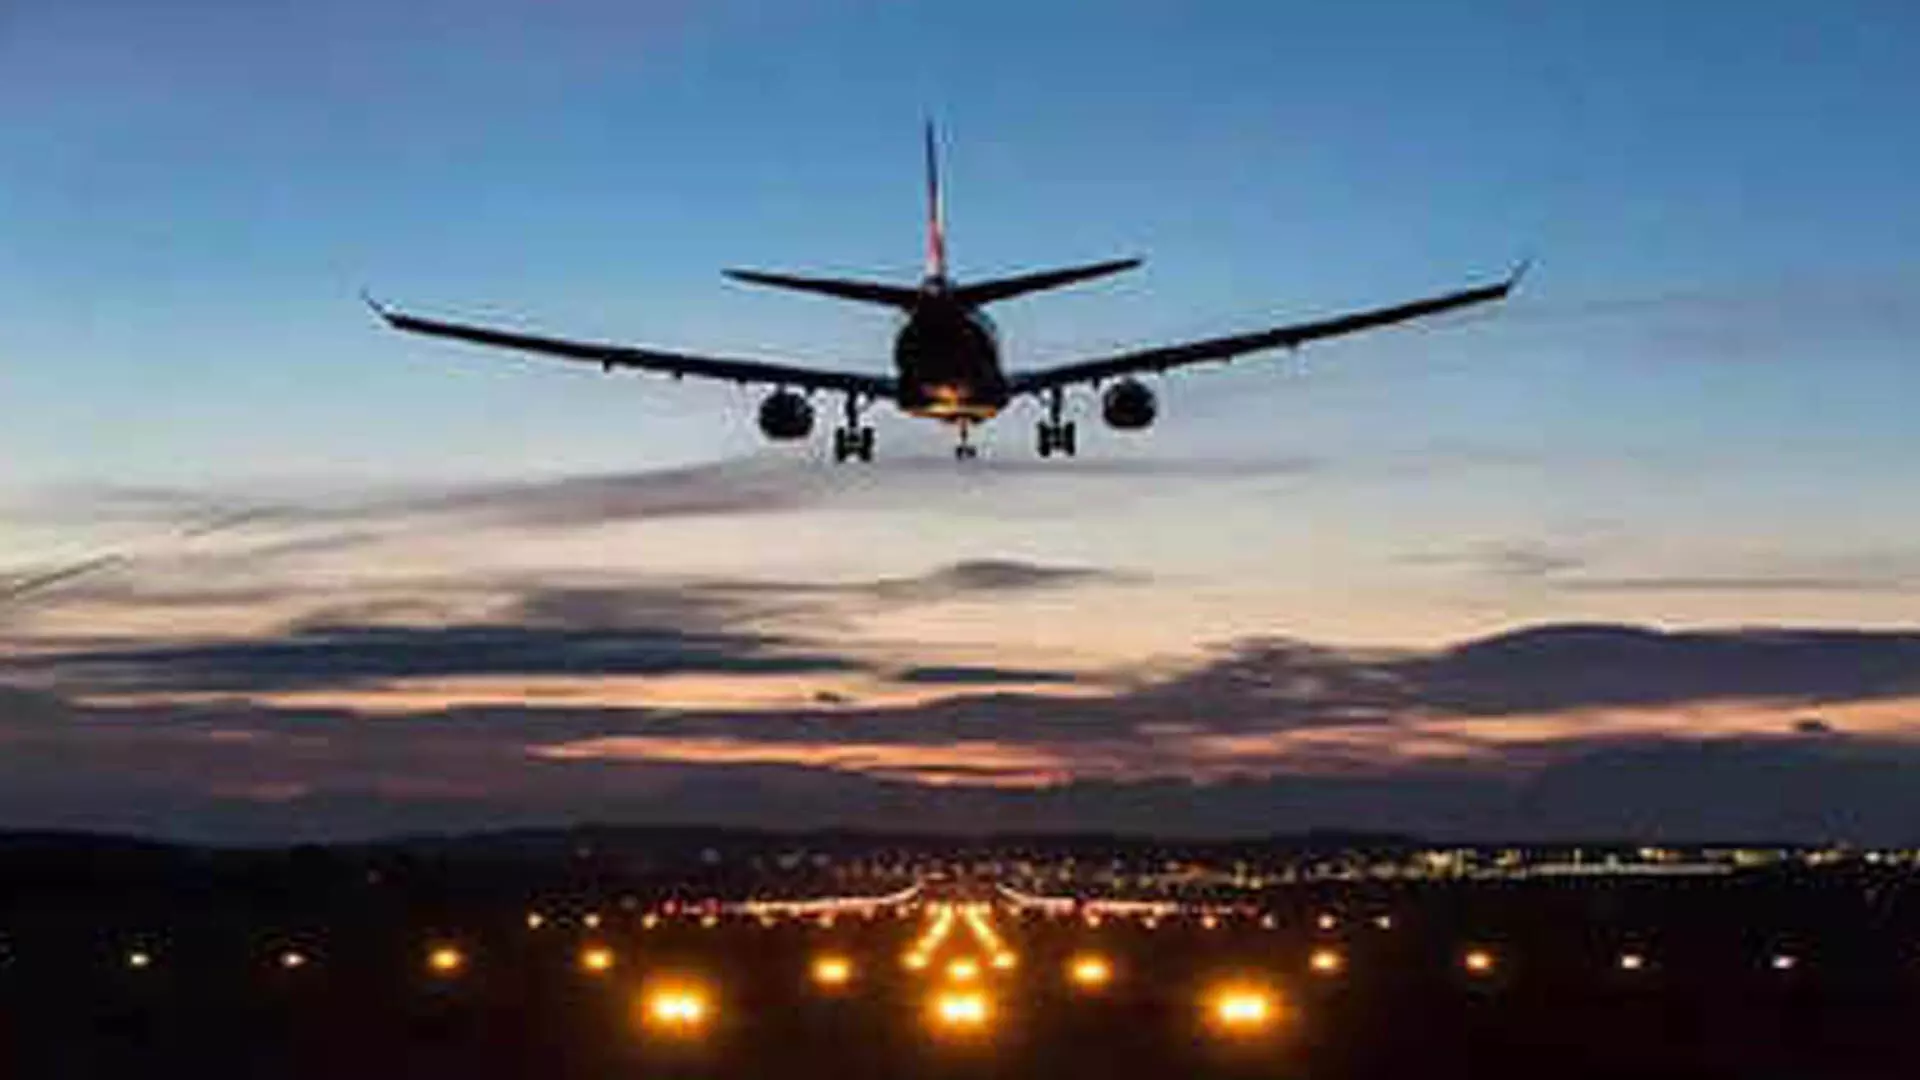 कोलकाता हवाईअड्डा से 21 घंटे के लिए उड़ान संचालन बंद कर देगा